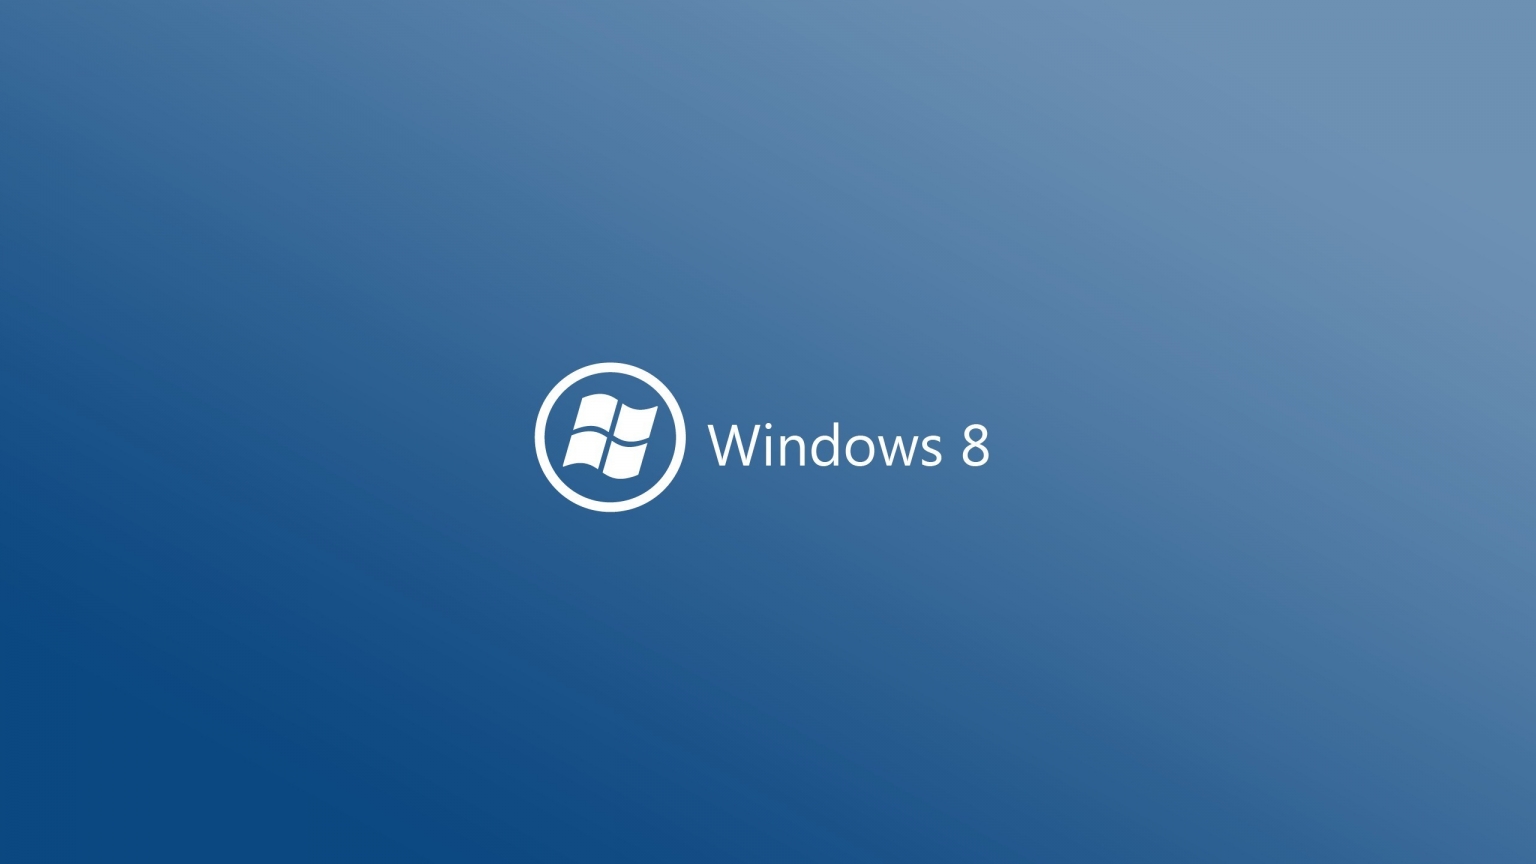 Windows 8 Logo for 1536 x 864 HDTV resolution